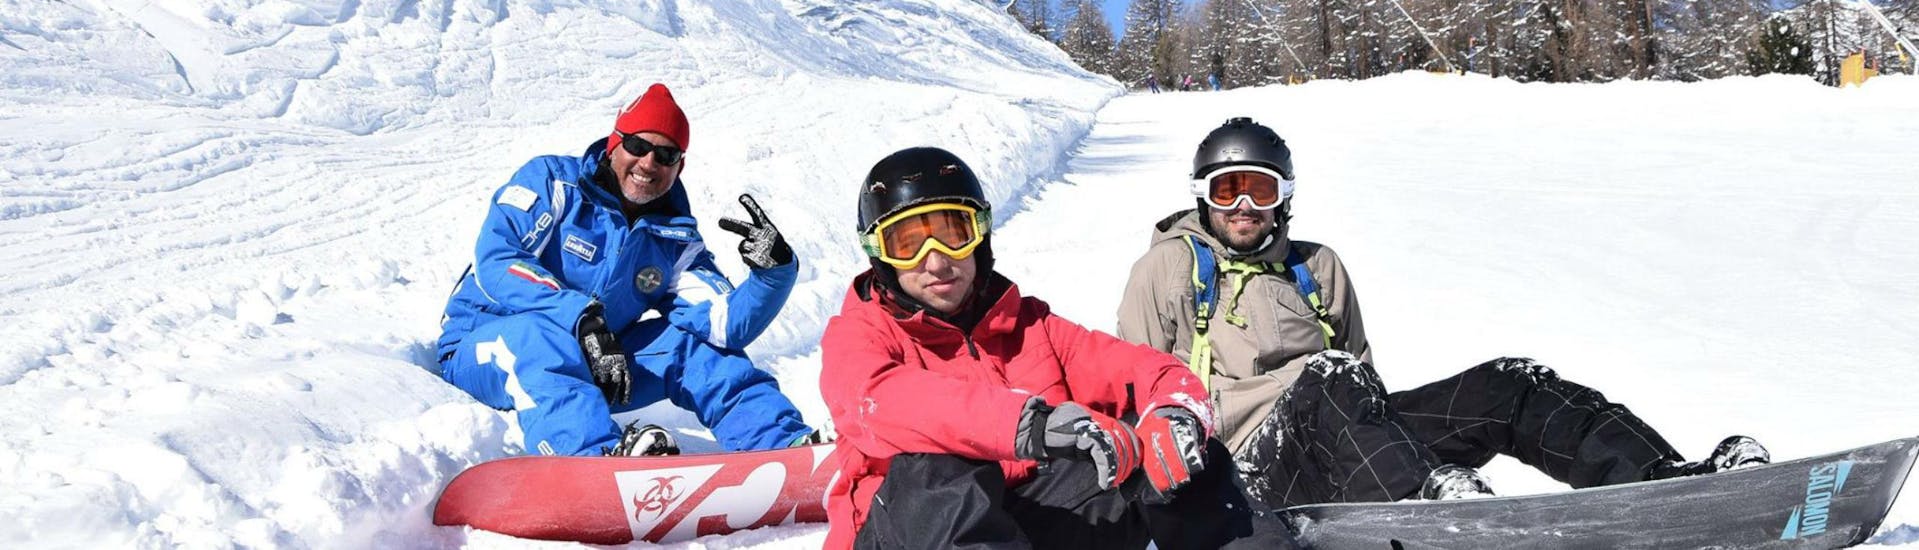 Zwei Snowboarder und Ihr Snowboardlehrer der Skischule Scuola di Sci e Snowboard Livigno Italy machen eine kurze Pause von der Aktivität Snowboardkurs für Kinder & Erwachsene - Nebensaison.